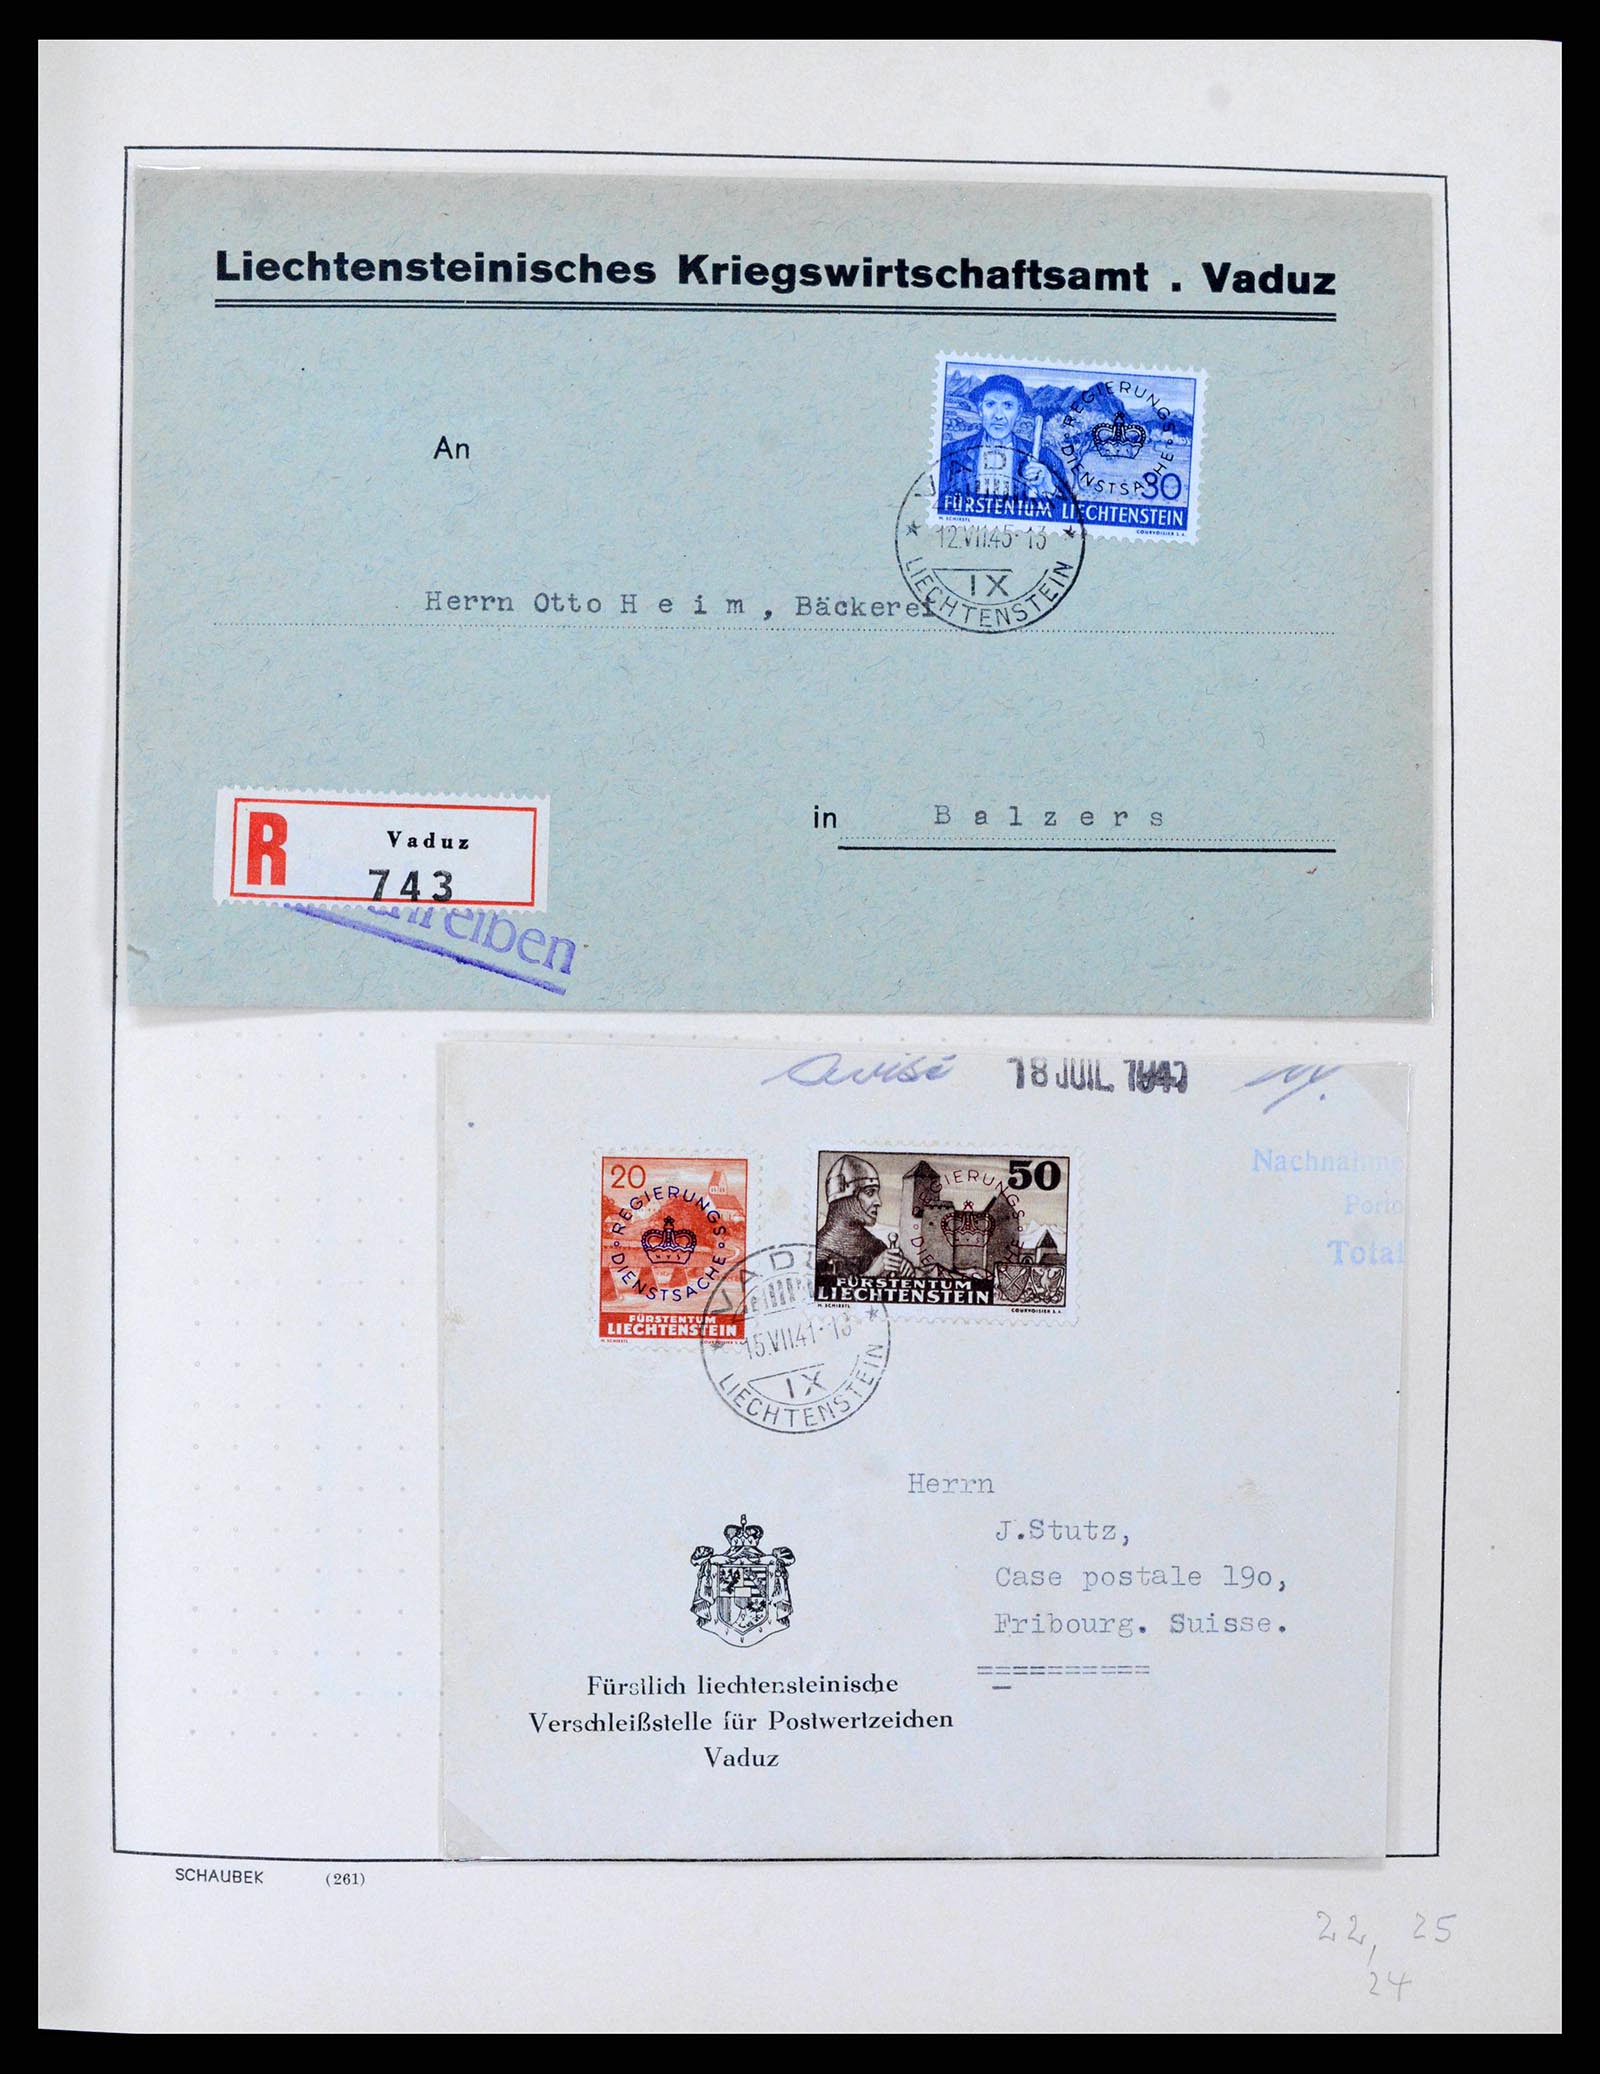 38204 0024 - Stamp collection 38204 Liechtenstein service covers 1932-1989.